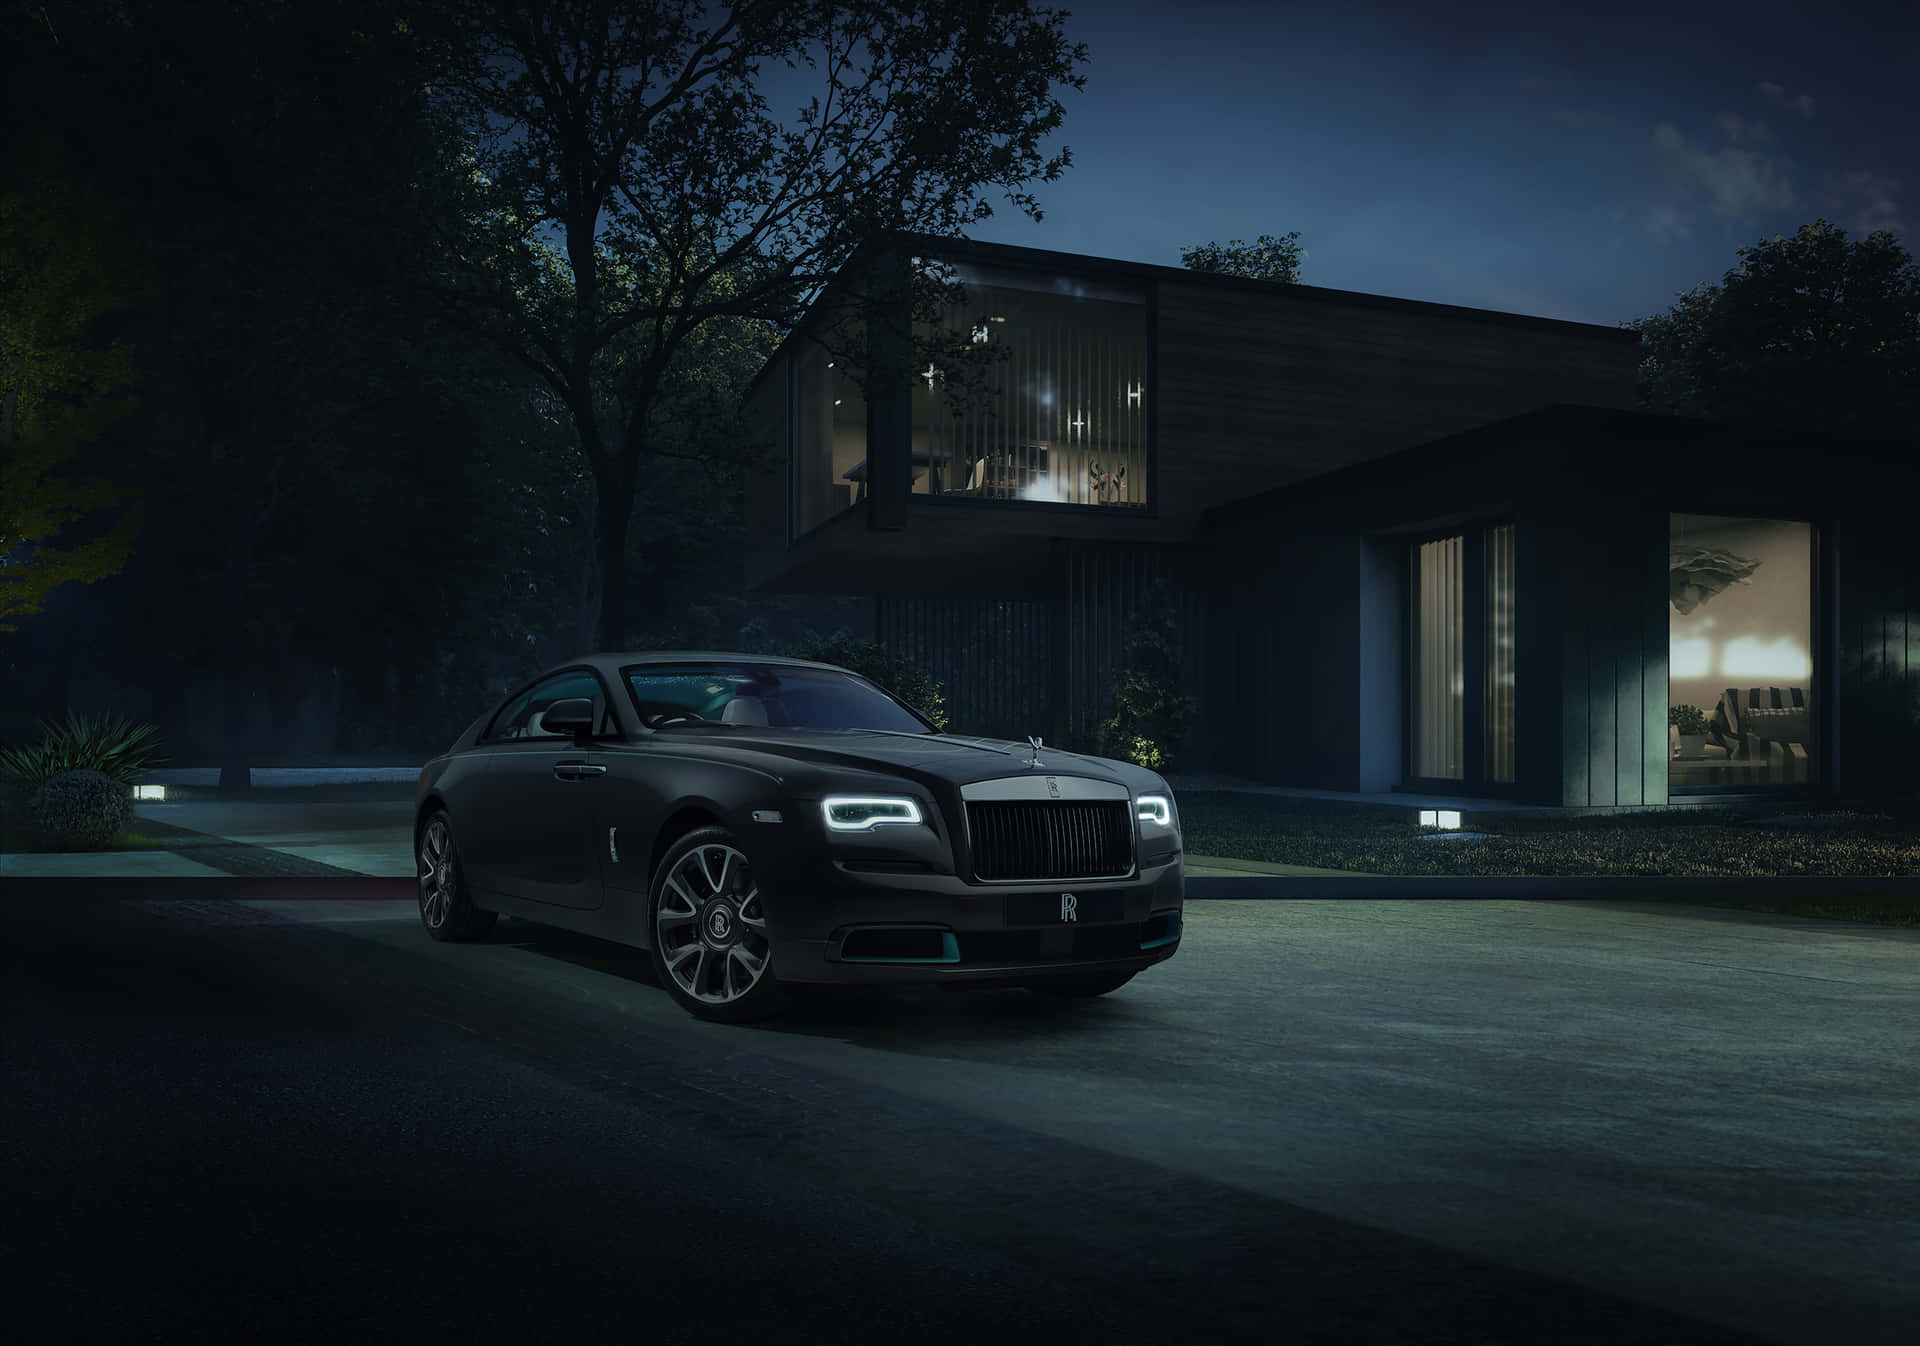 Luxury Black Car Outside Modern Home Nighttime.jpg Wallpaper